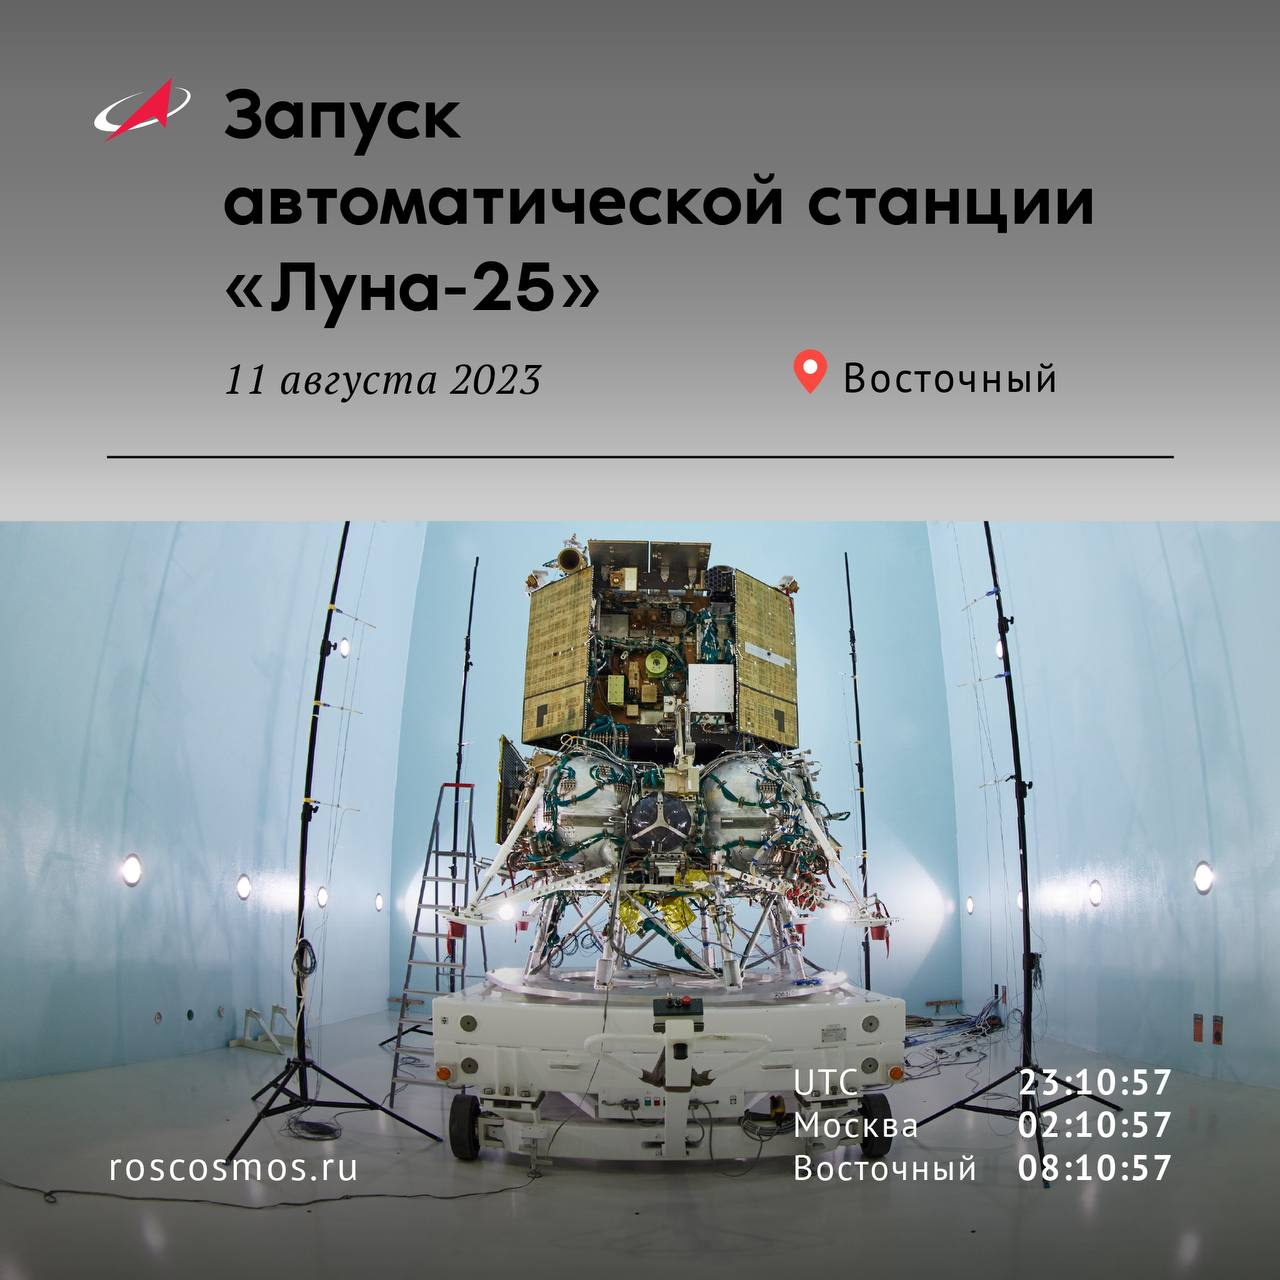 Она летит к Луне. «Союз» с первым в истории современной России лунным аппаратом стартовал с Земли